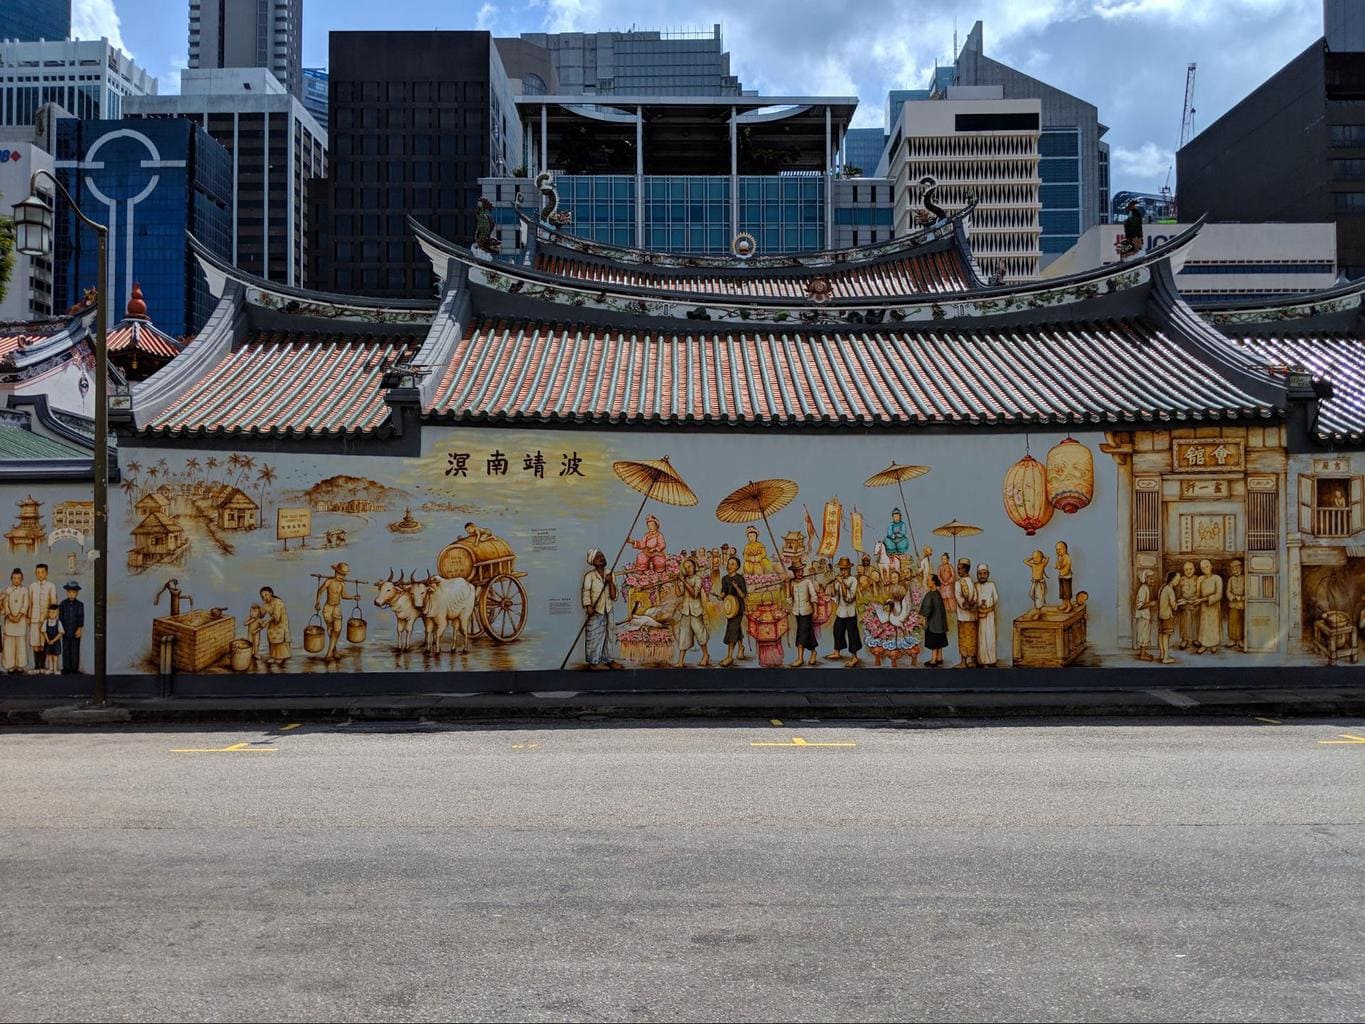 Yip Yew Chong’s murals